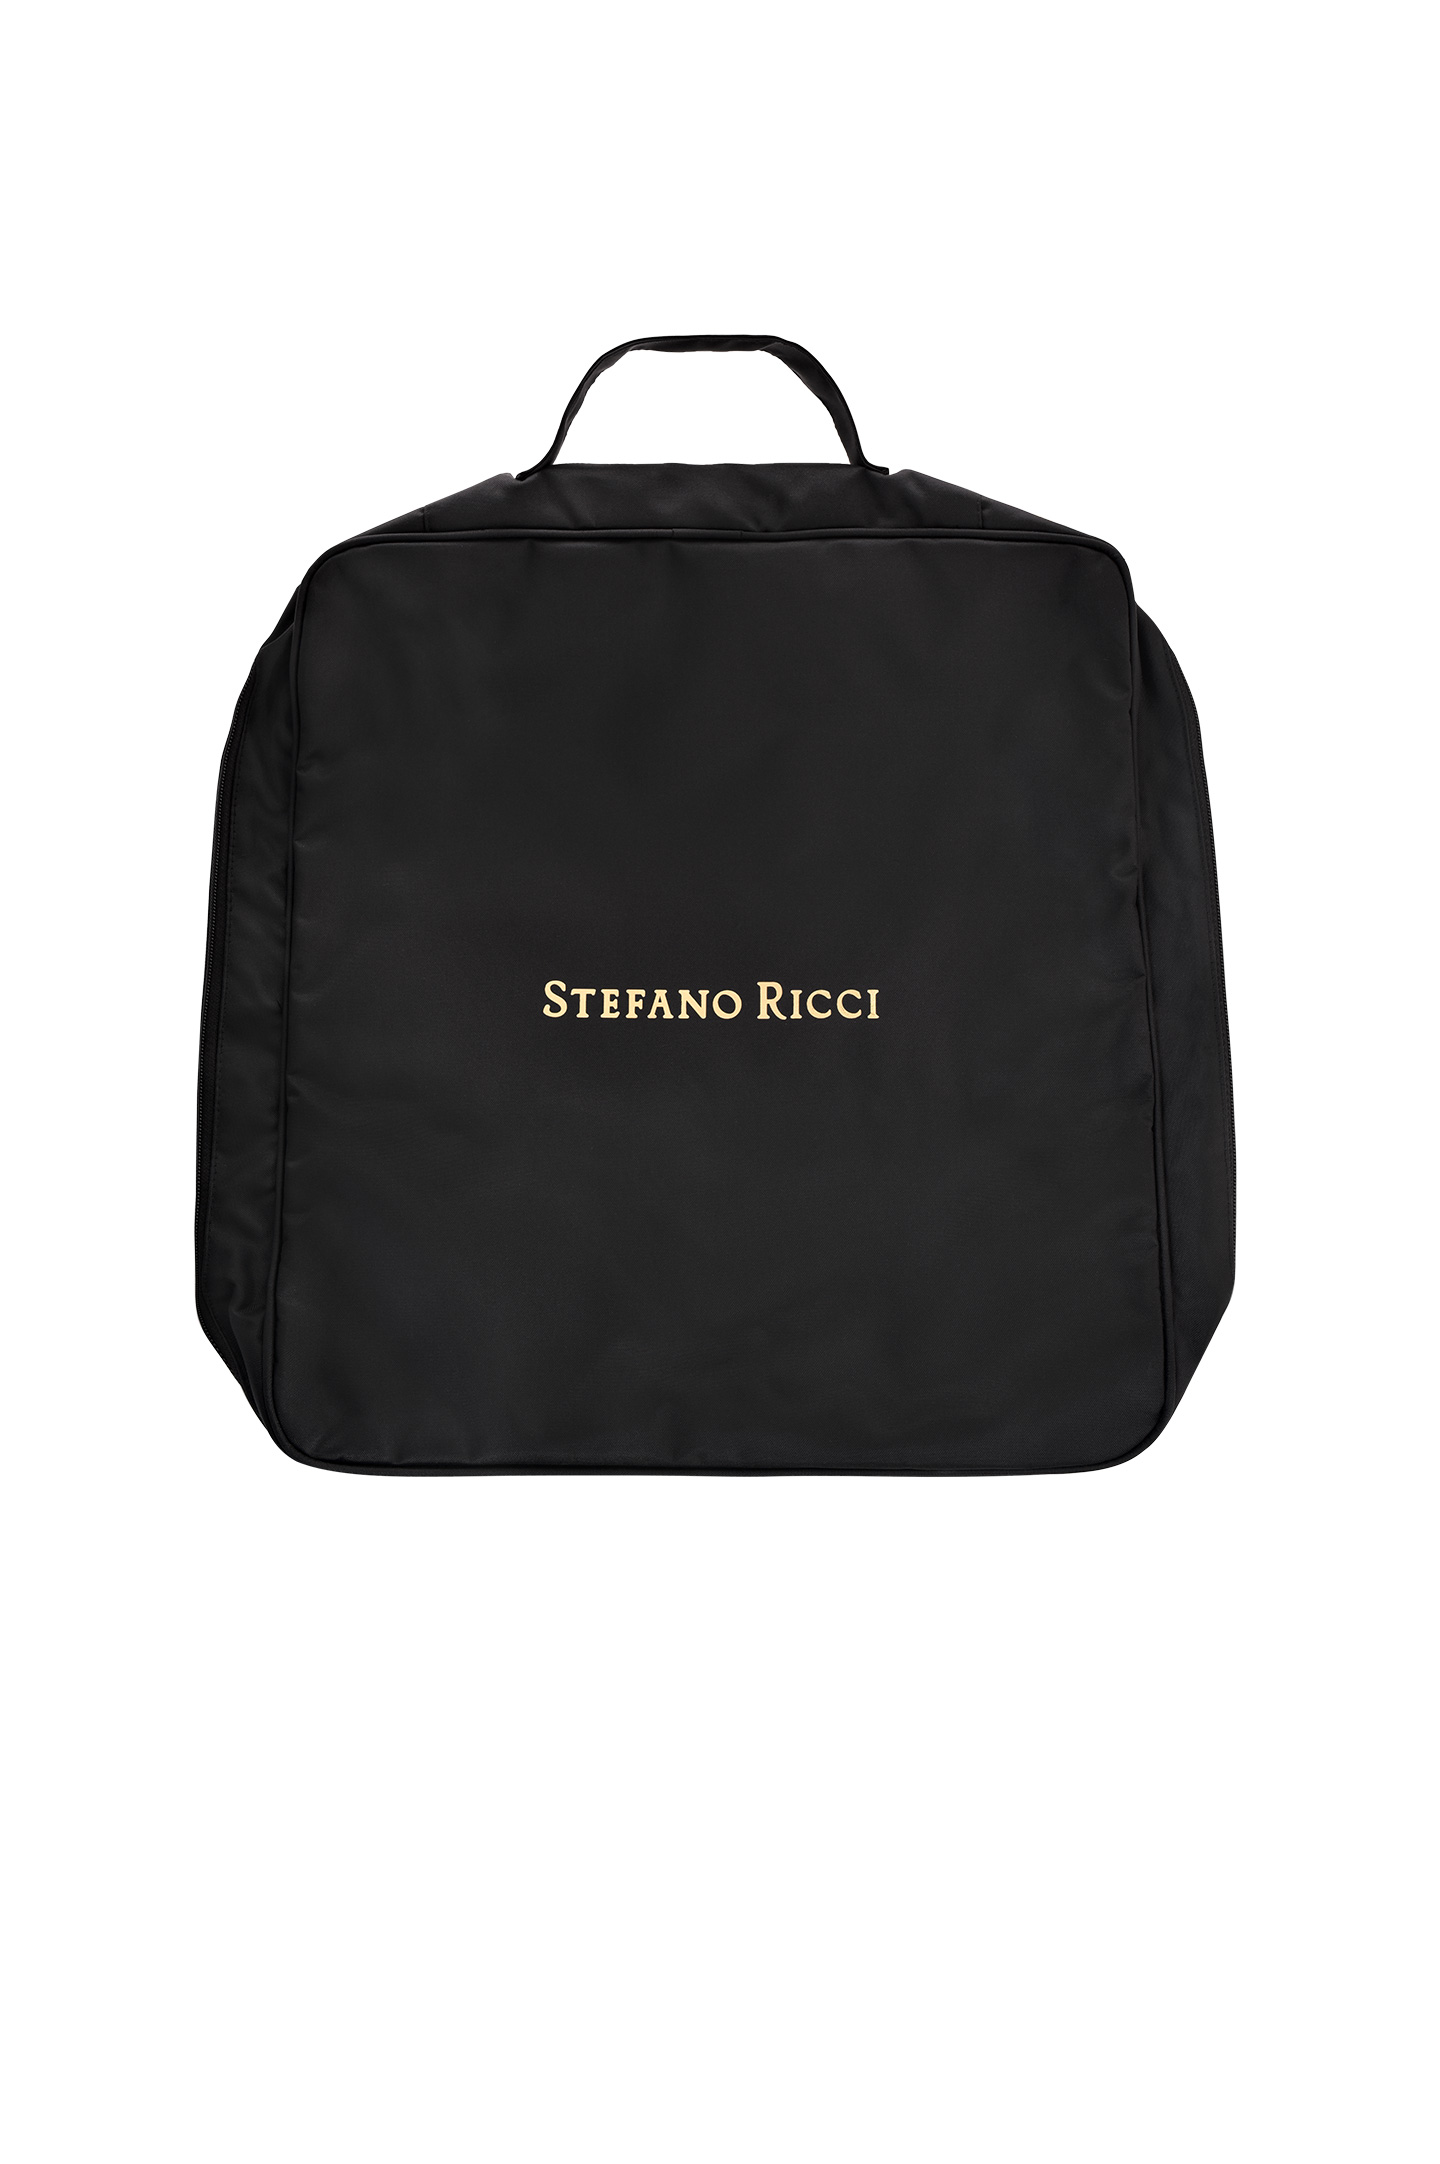 Сумка для спорт одежды STEFANO RICCI SHOA23 A23, цвет: Черный, Мужской